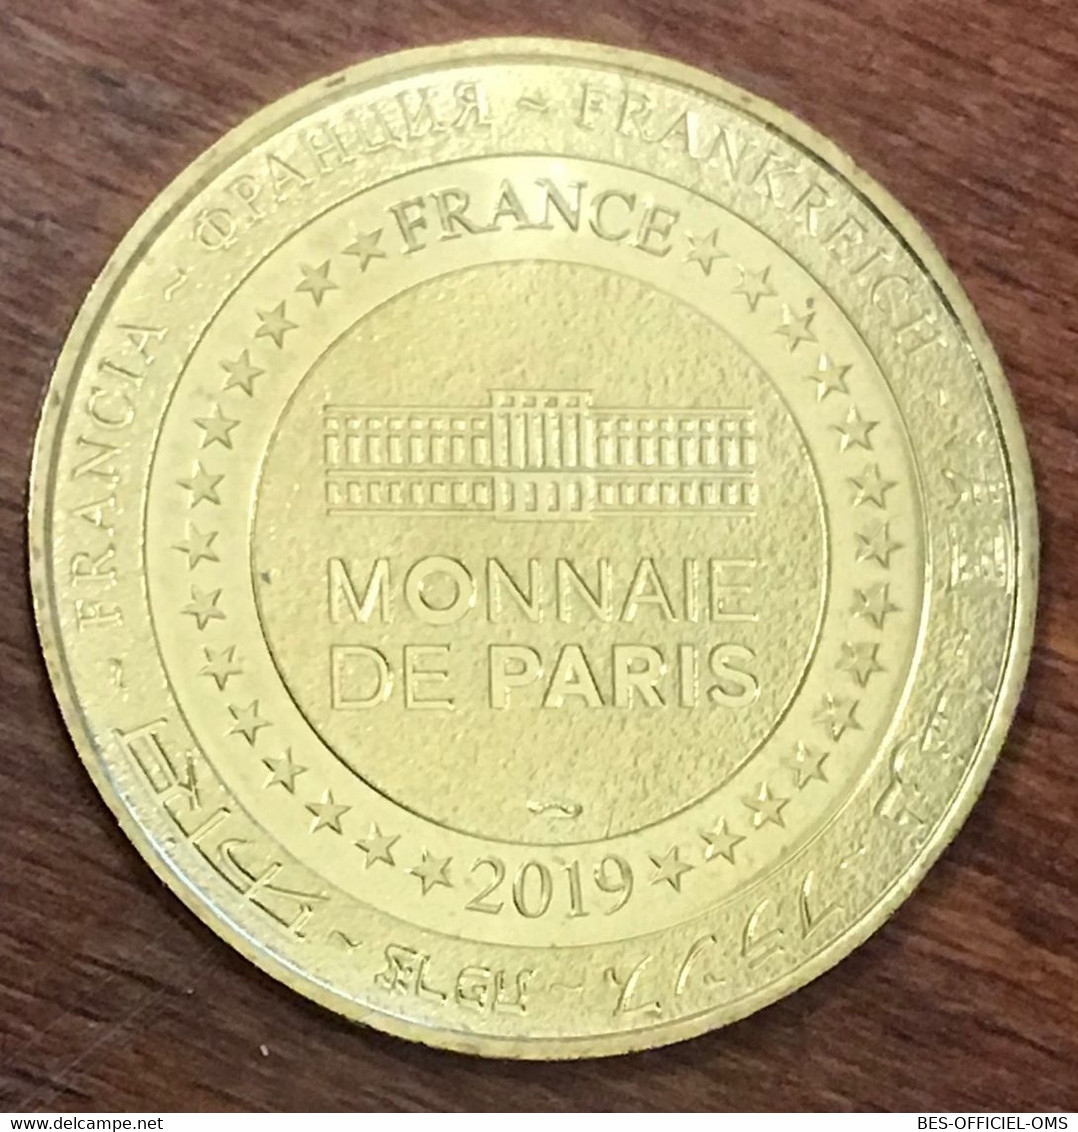 37 MONTS DOMAINE DE CANDÉ MDP 2019 MEDAILLE SOUVENIR MONNAIE DE PARIS JETON TOURISTIQUE MEDALS COINS TOKENS - 2019